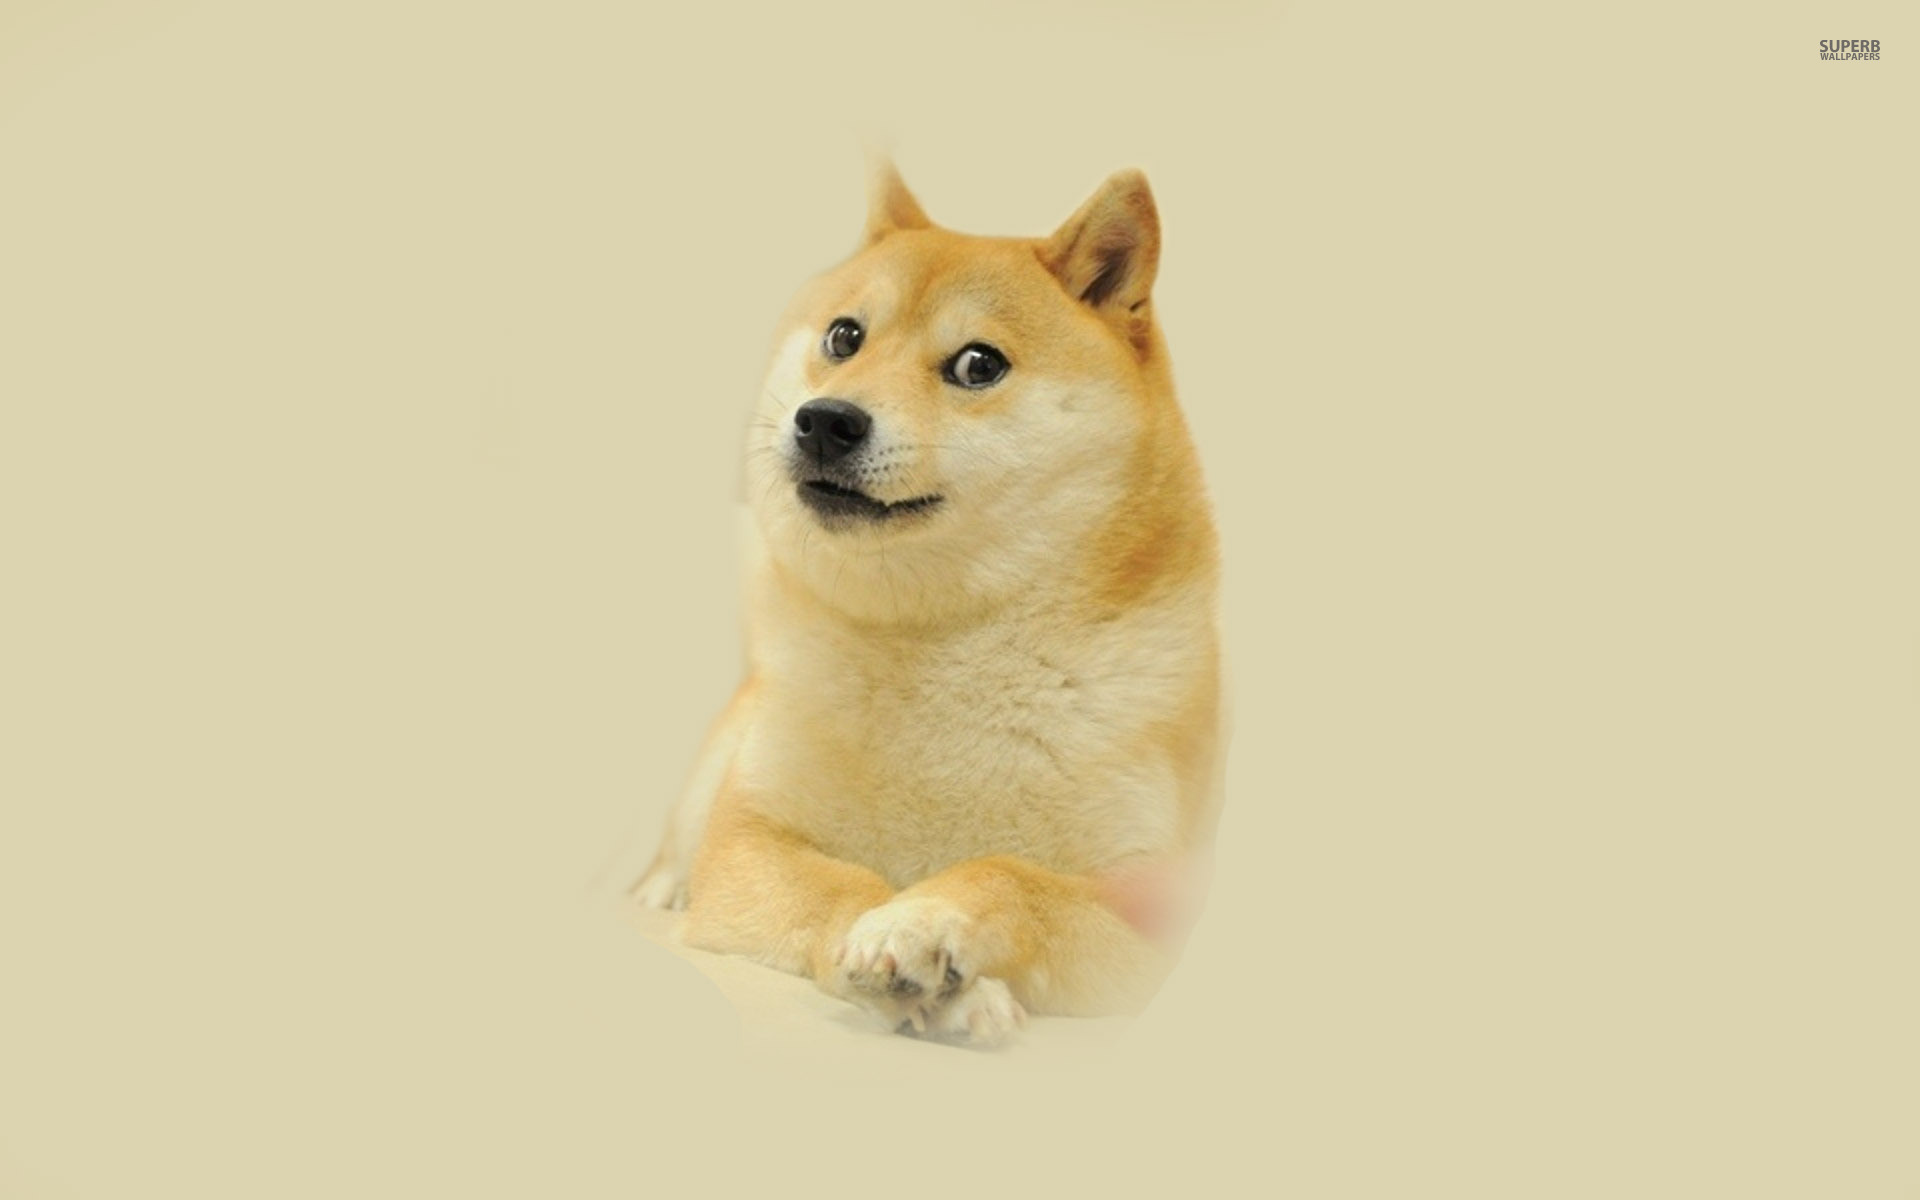 47+] Doge Meme Wallpaper - WallpaperSafari